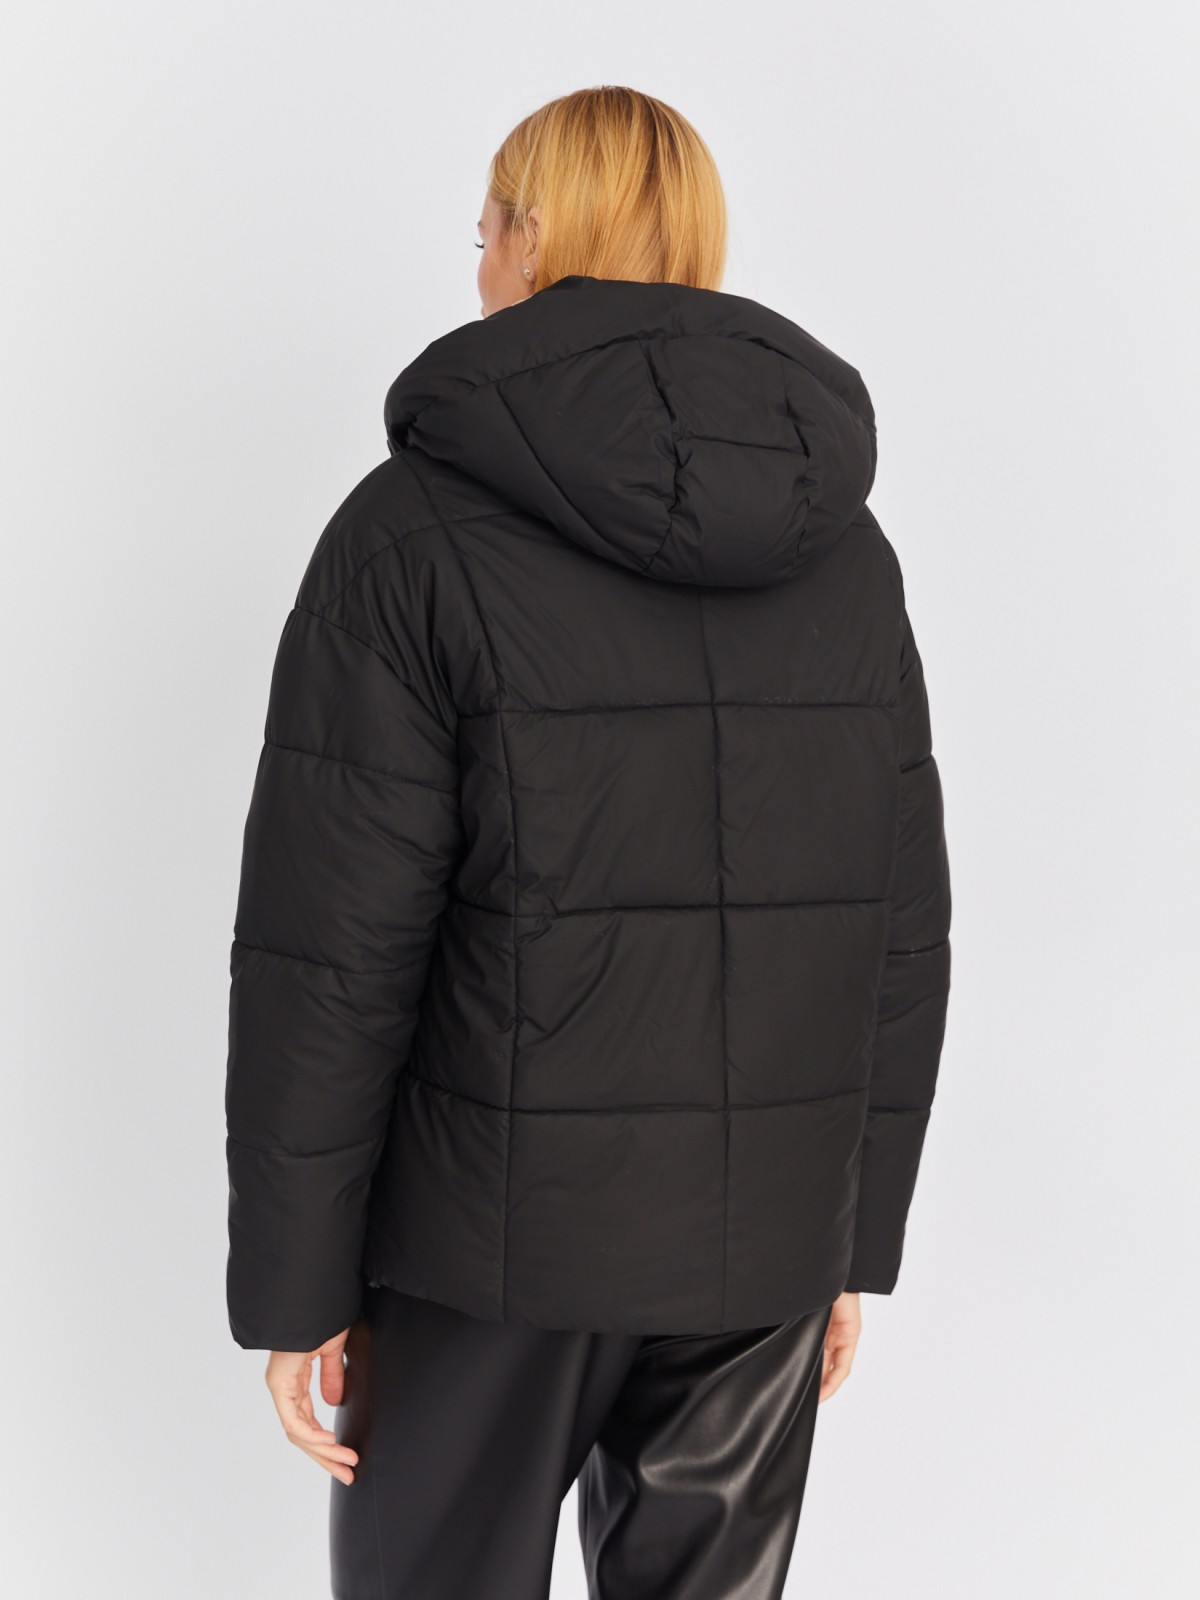 Короткая тёплая дутая куртка с высоким воротником и капюшоном zolla 02234510L234, цвет черный, размер XS - фото 6